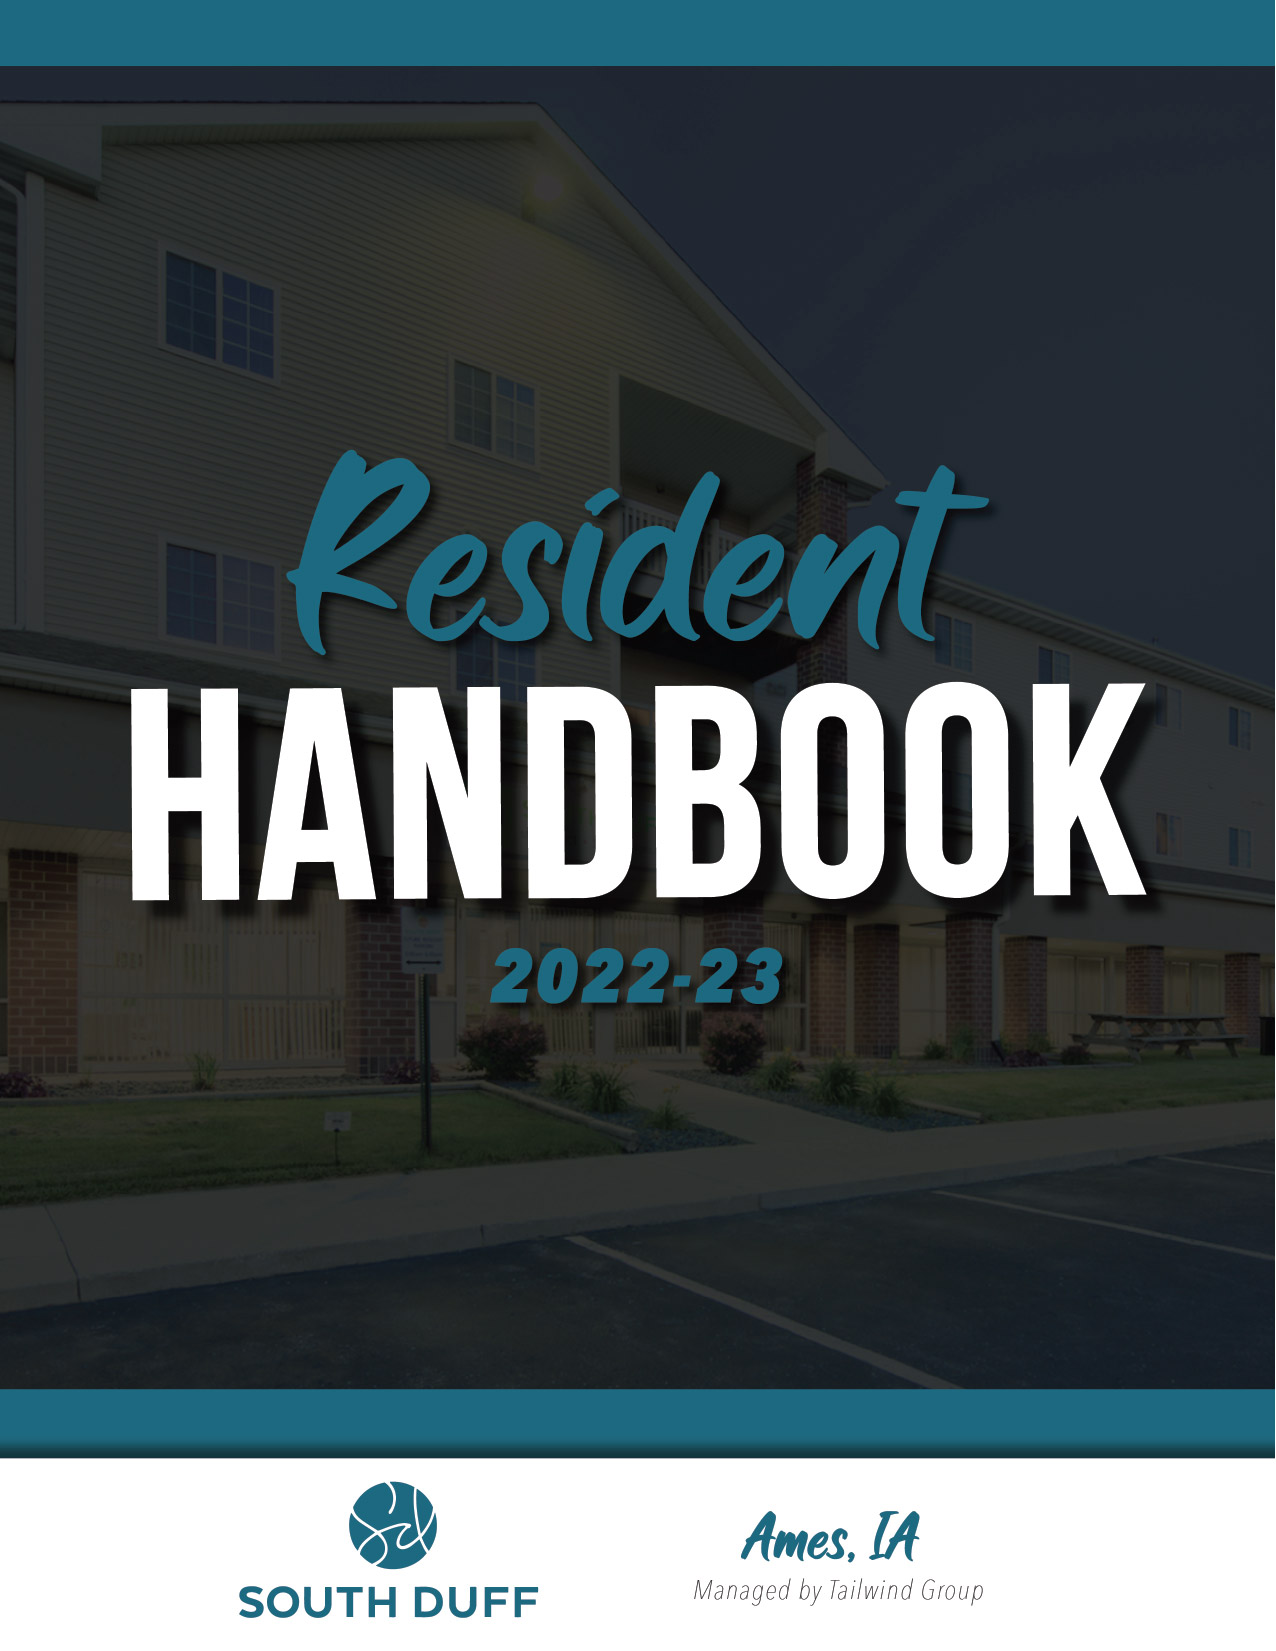 South Duff Resident Handbook